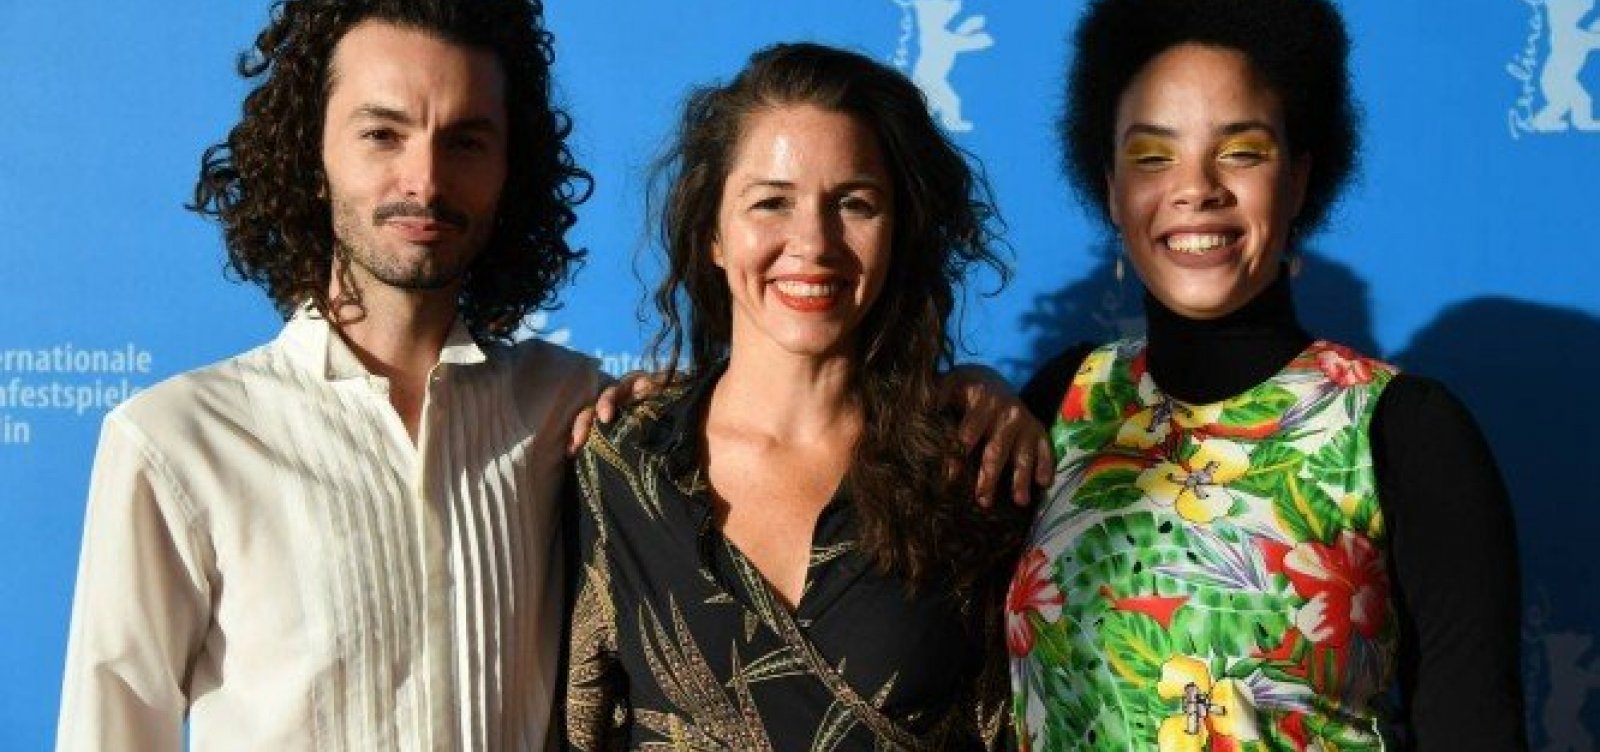 Filme brasileiro ganha prêmio da Anistia Internacional no Festival de Berlim